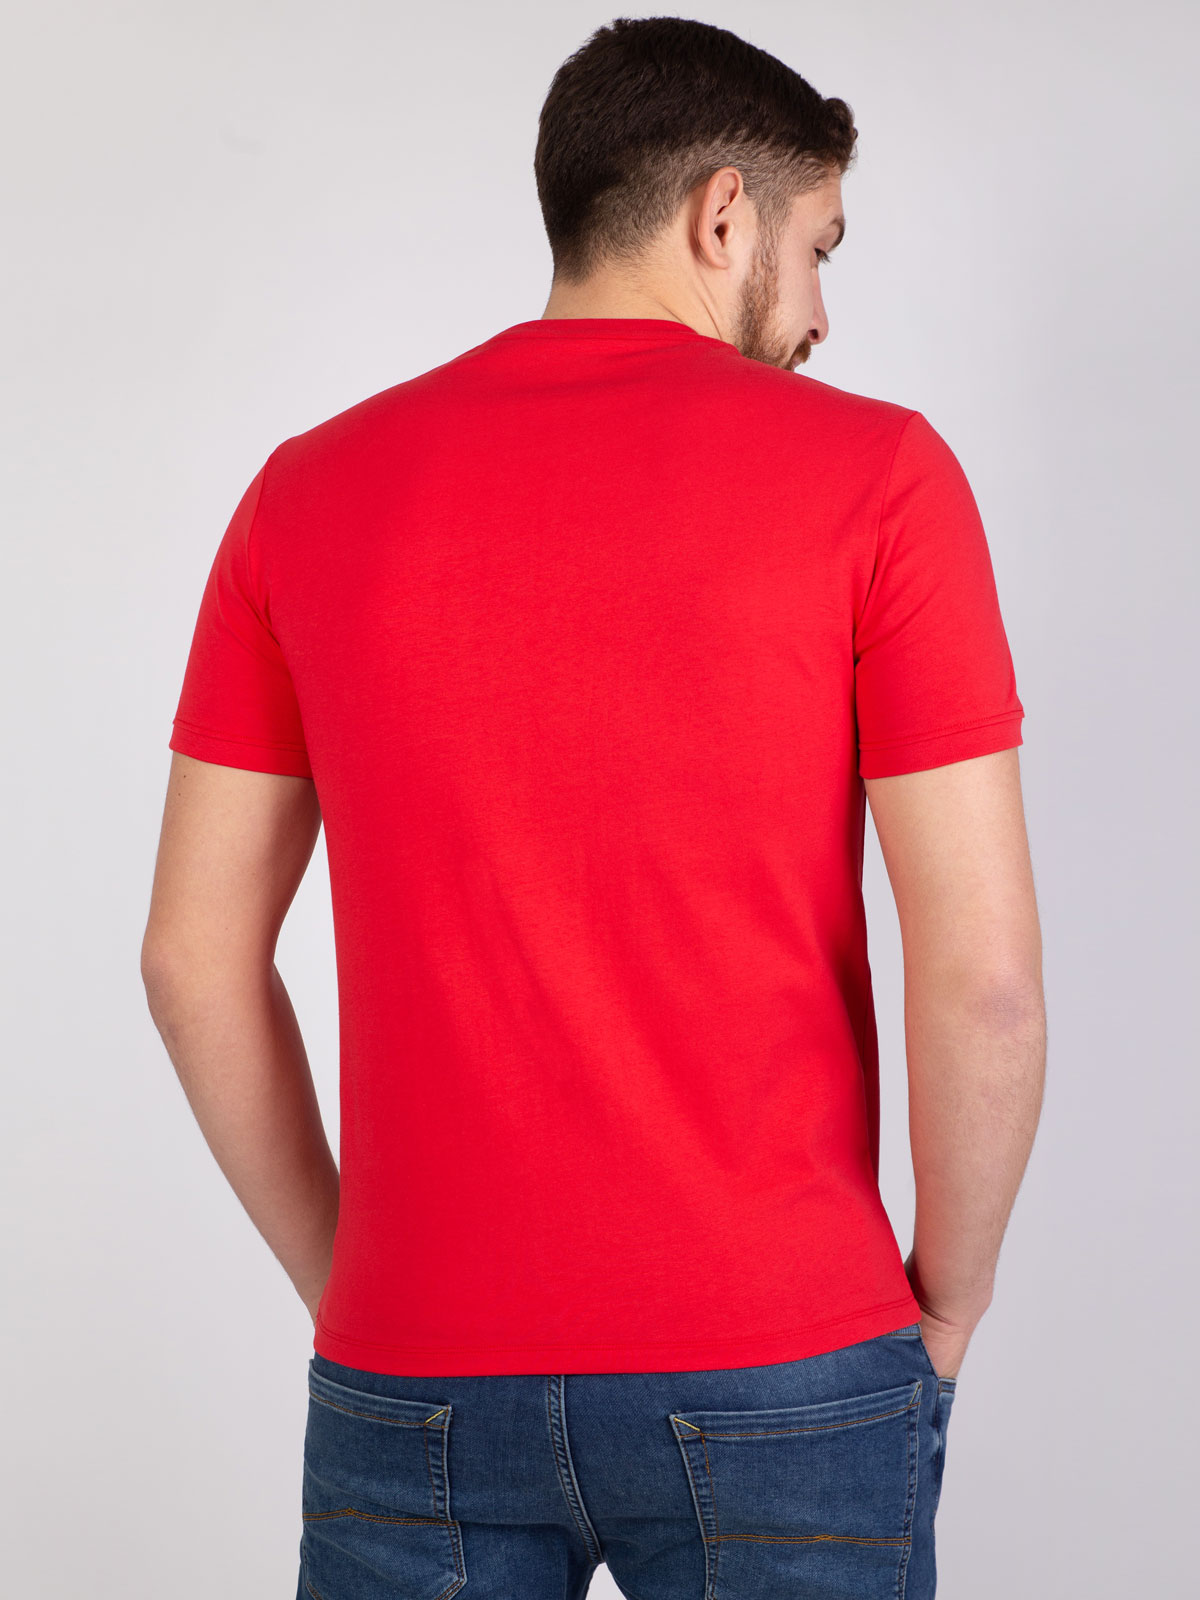 Κόκκινο μπλουζάκι με μπλε στάμπα - 96389 € 12.37 img4